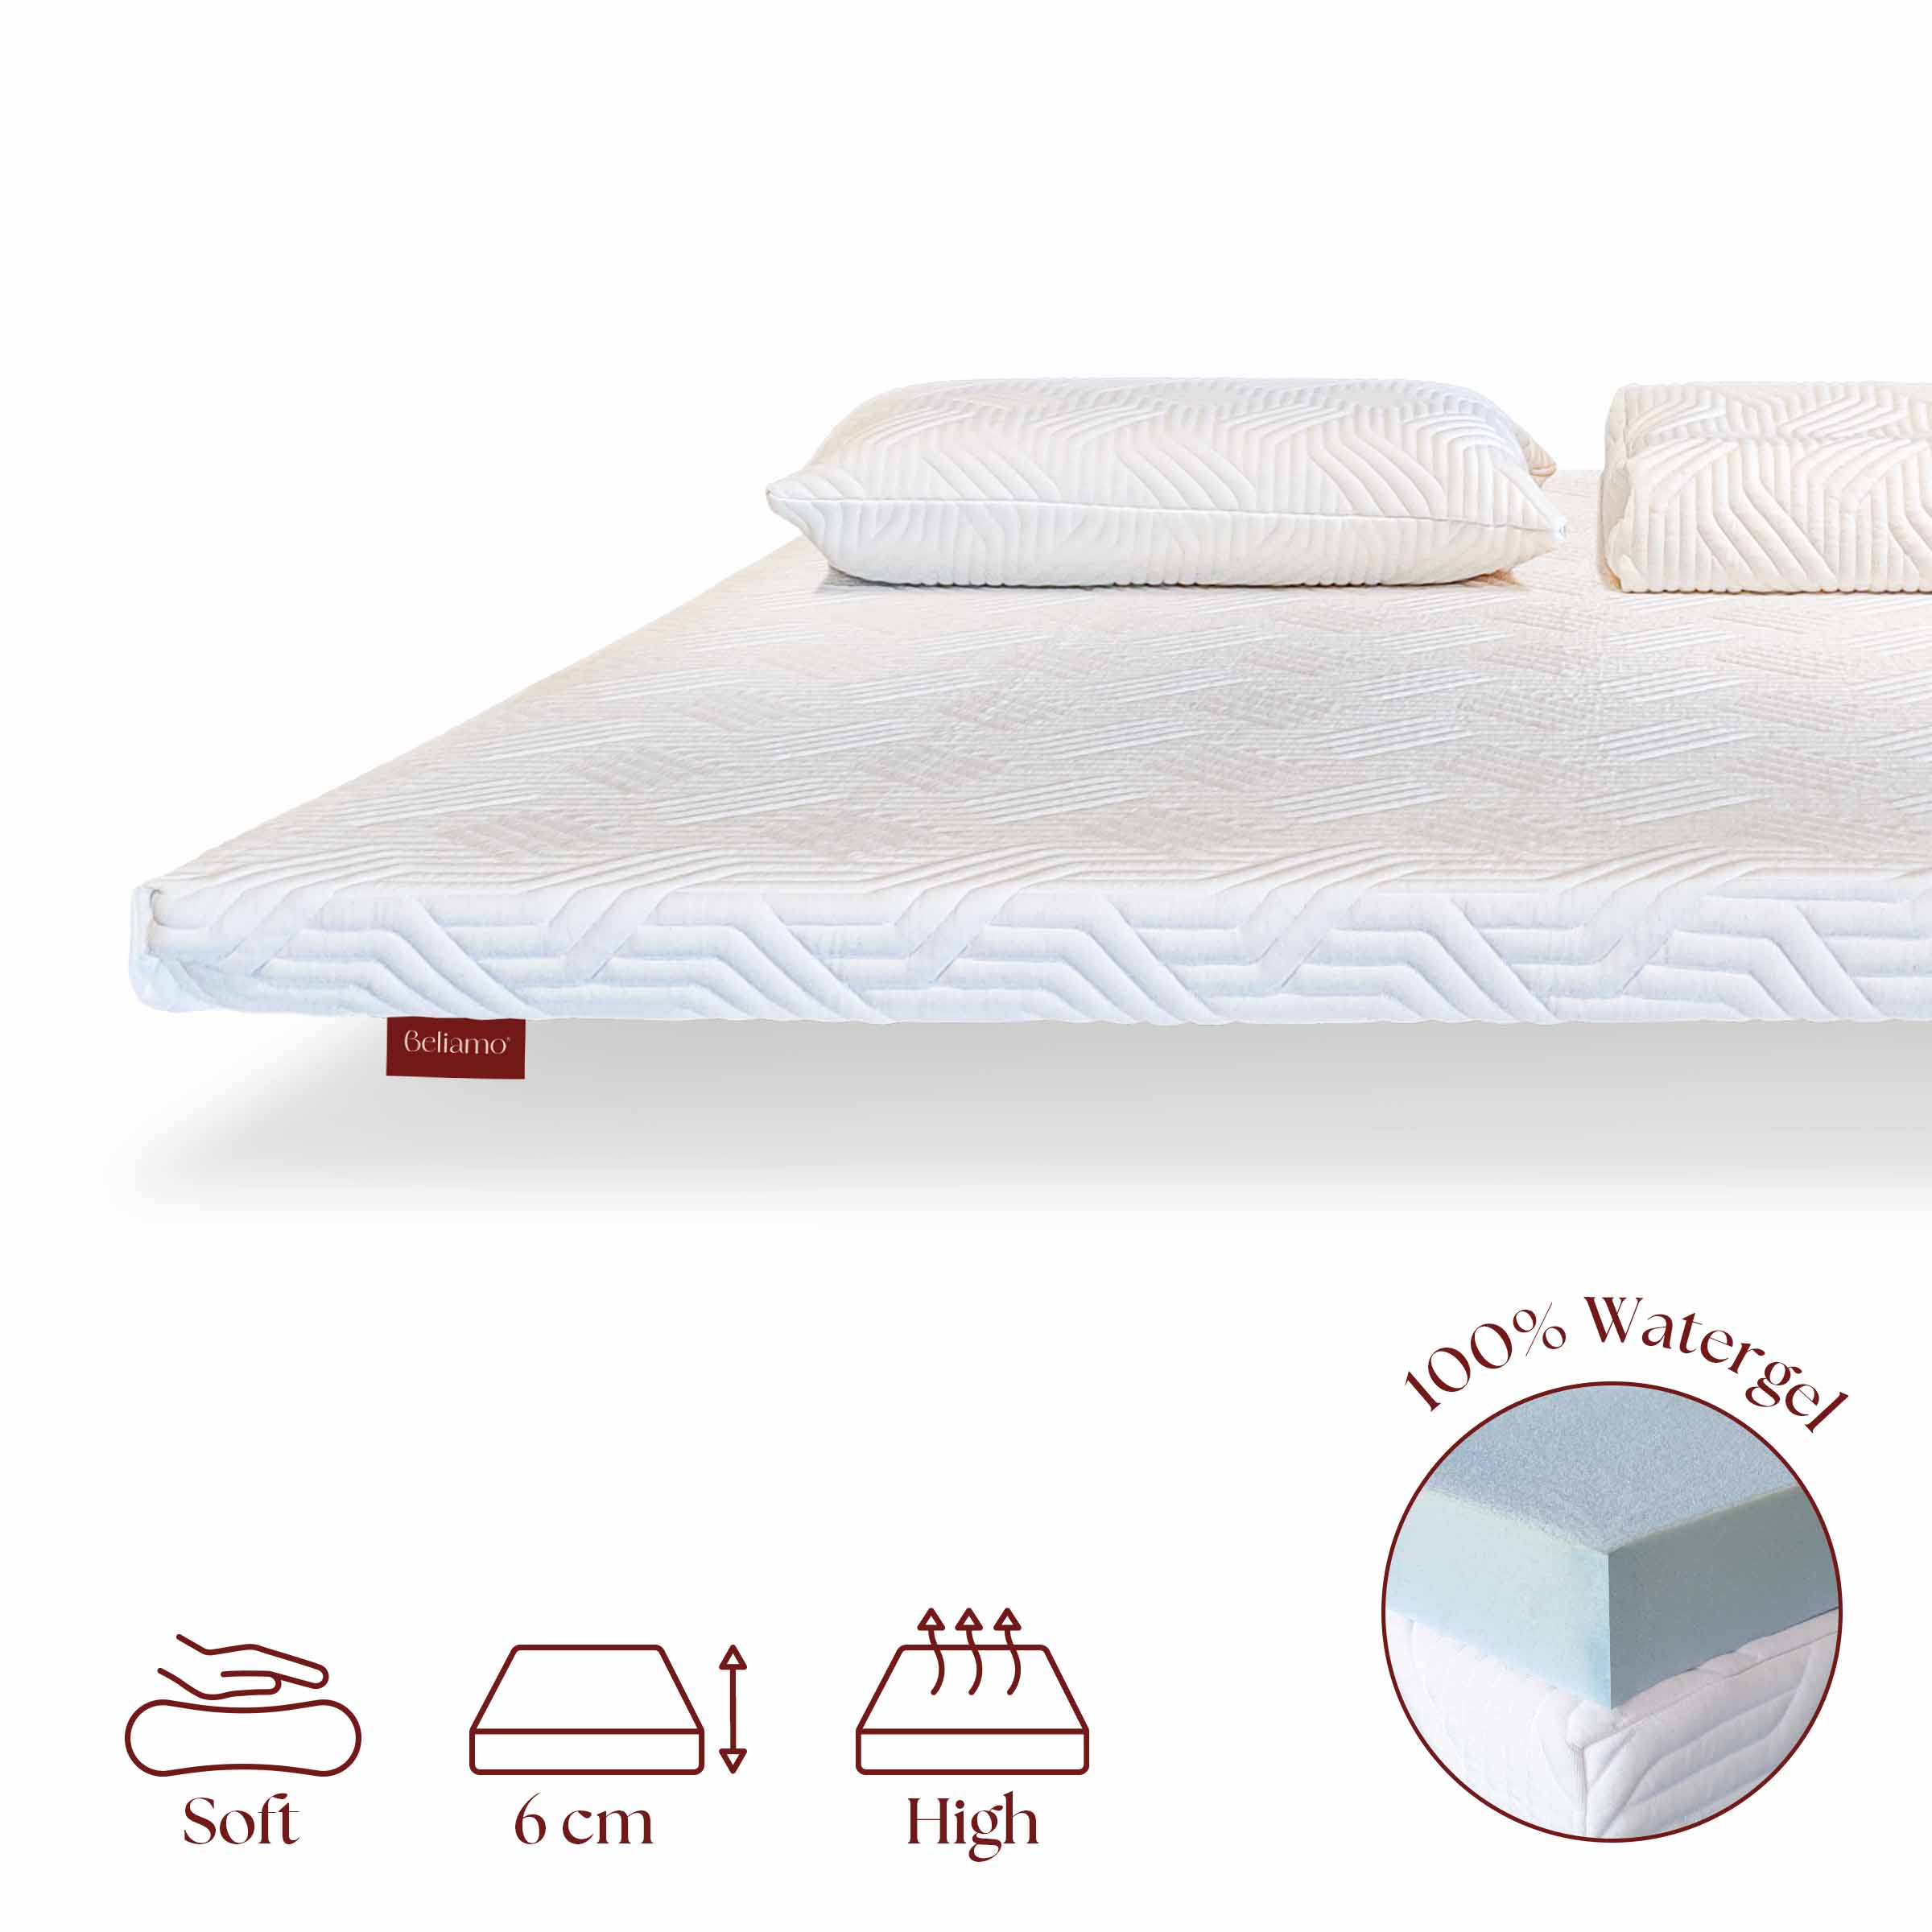 Topper Bellini in Watergel di Beliamo, progettato per aggiungere comfort e supporto al materasso, migliorando la qualità del sonno con materiali traspiranti e ergonomici.